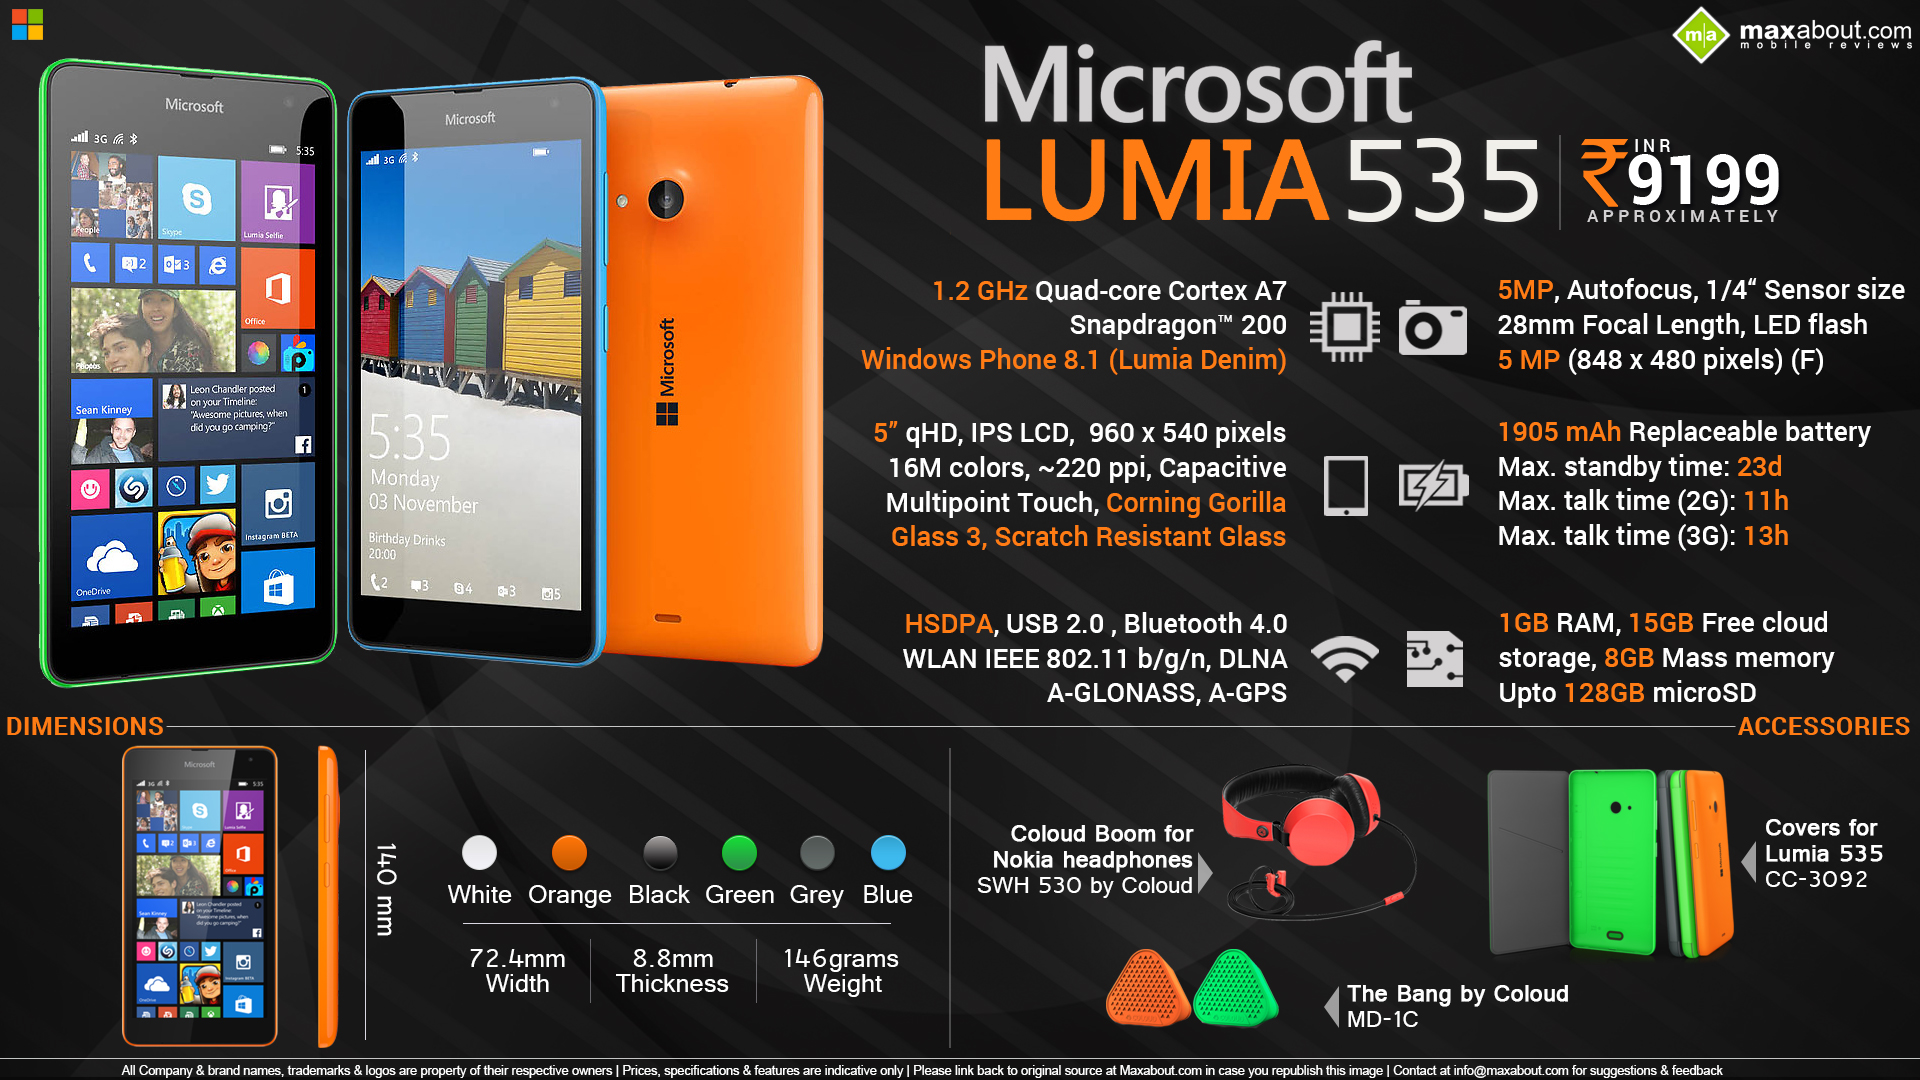 Quick Facts - Microsoft Lumia 535